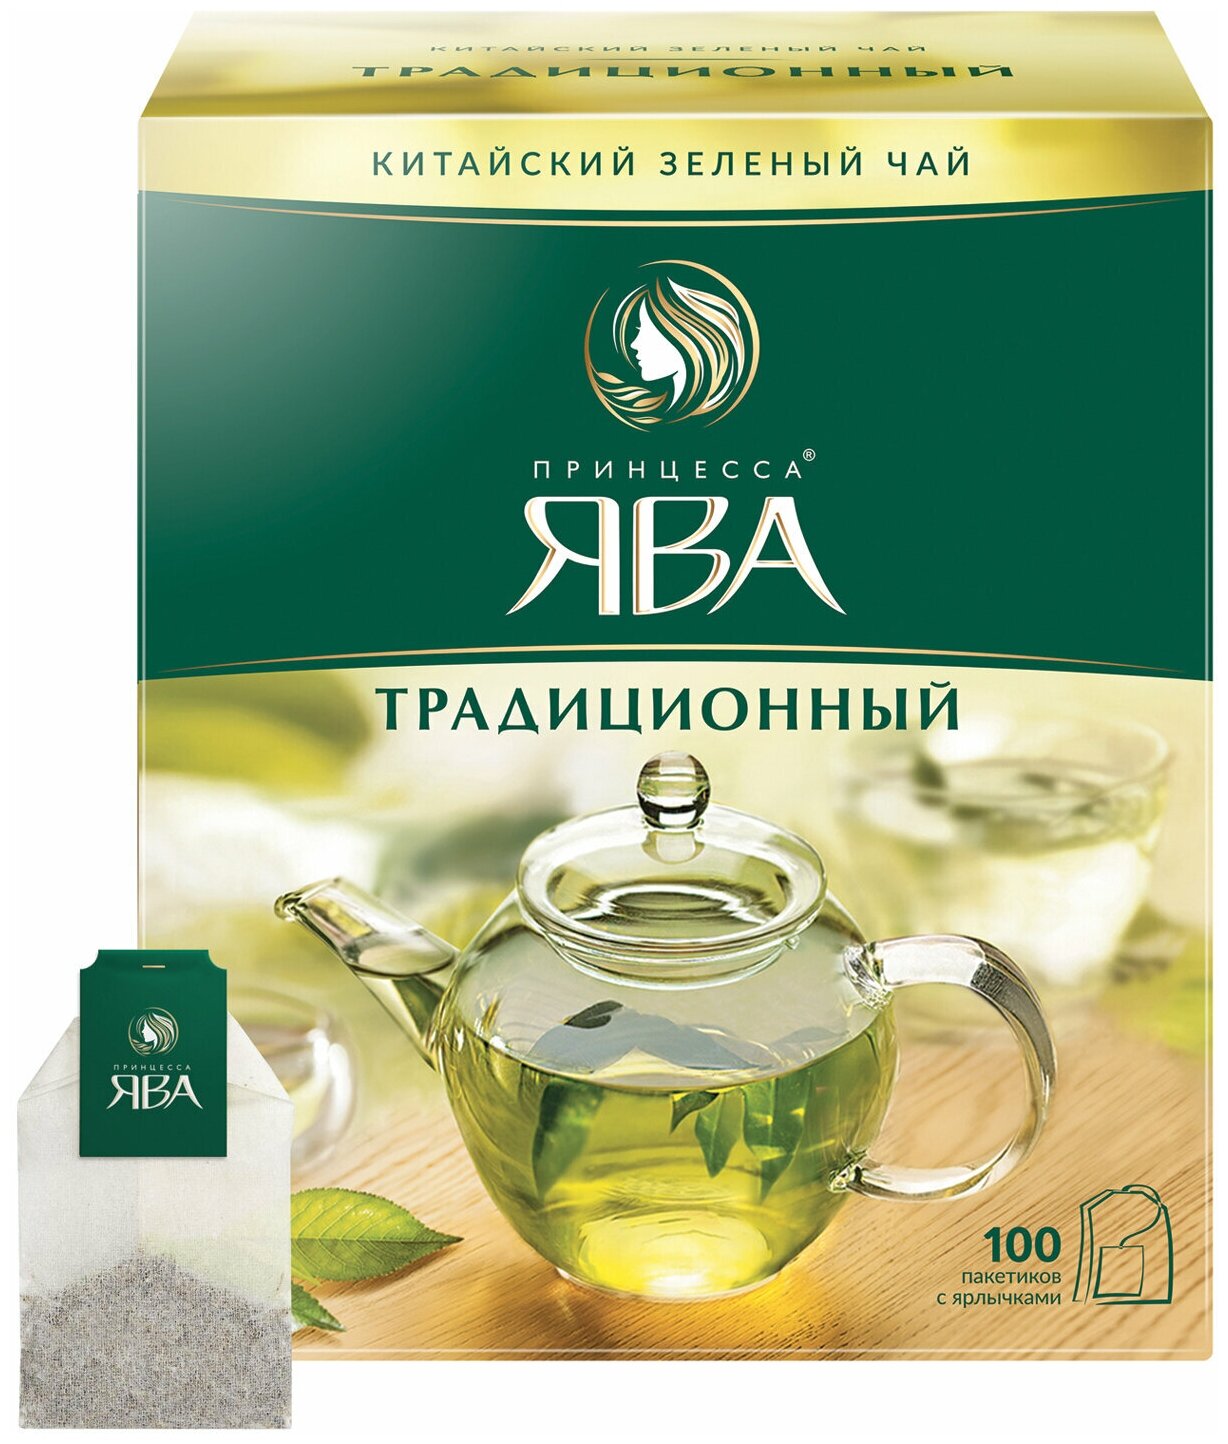 Чай принцесса ЯВА, зеленый, 100 пакетиков с ярлычками по 2 г, 0880-18 - фотография № 1